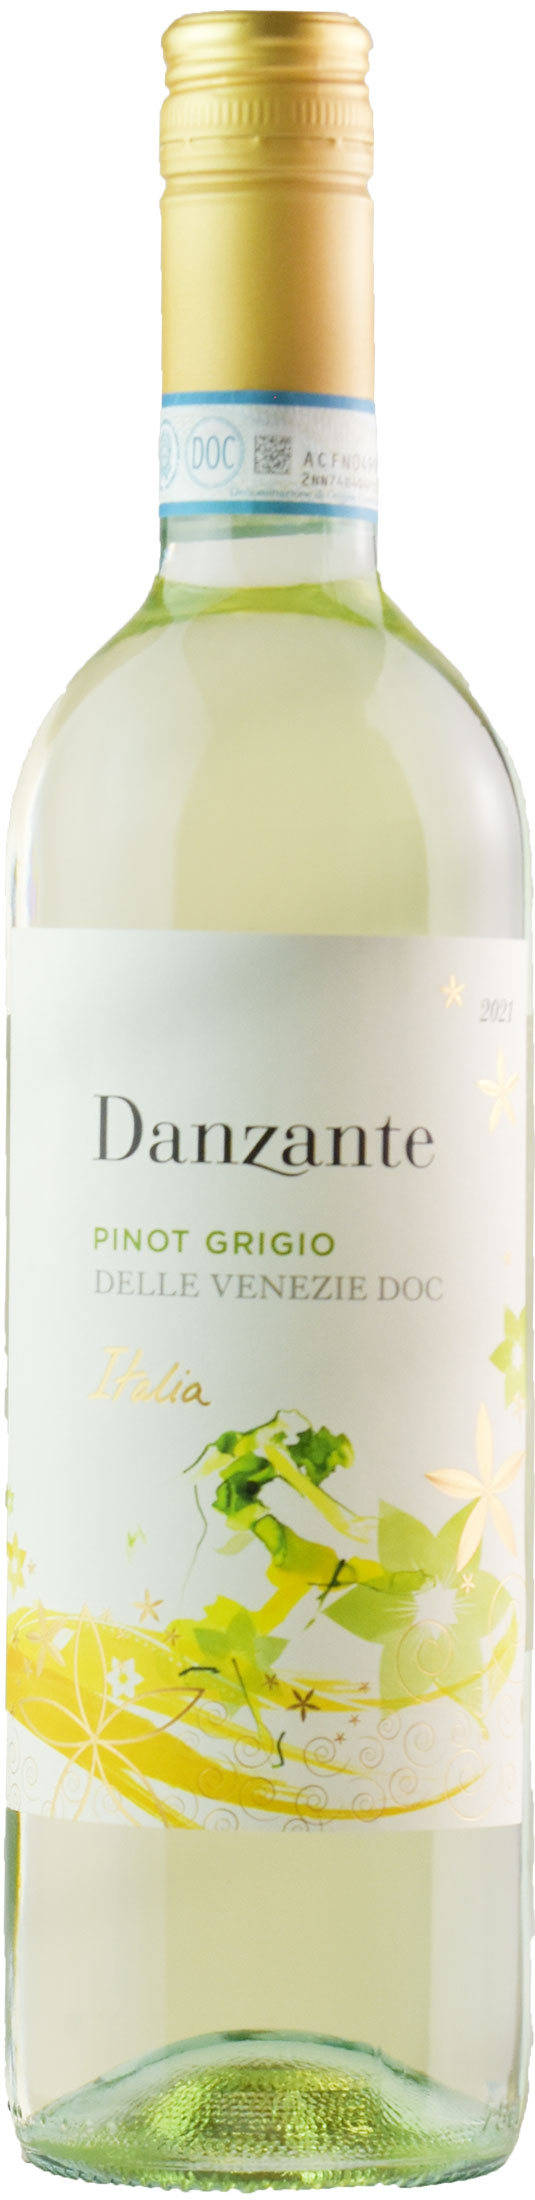 Marchesi Frescobaldi Danzante Pinot Grigio 2021